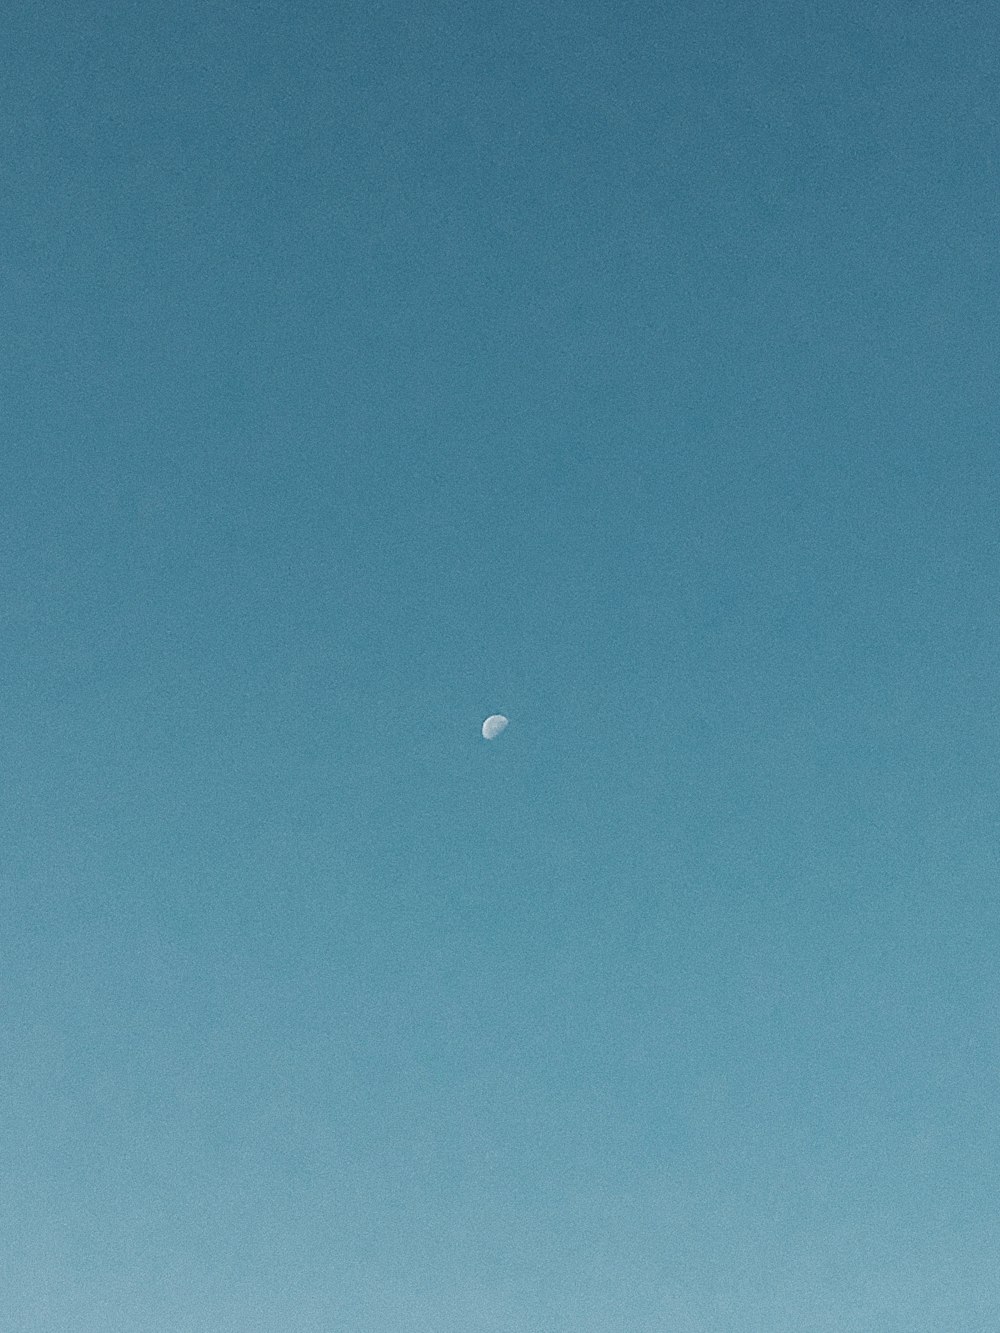 meia lua